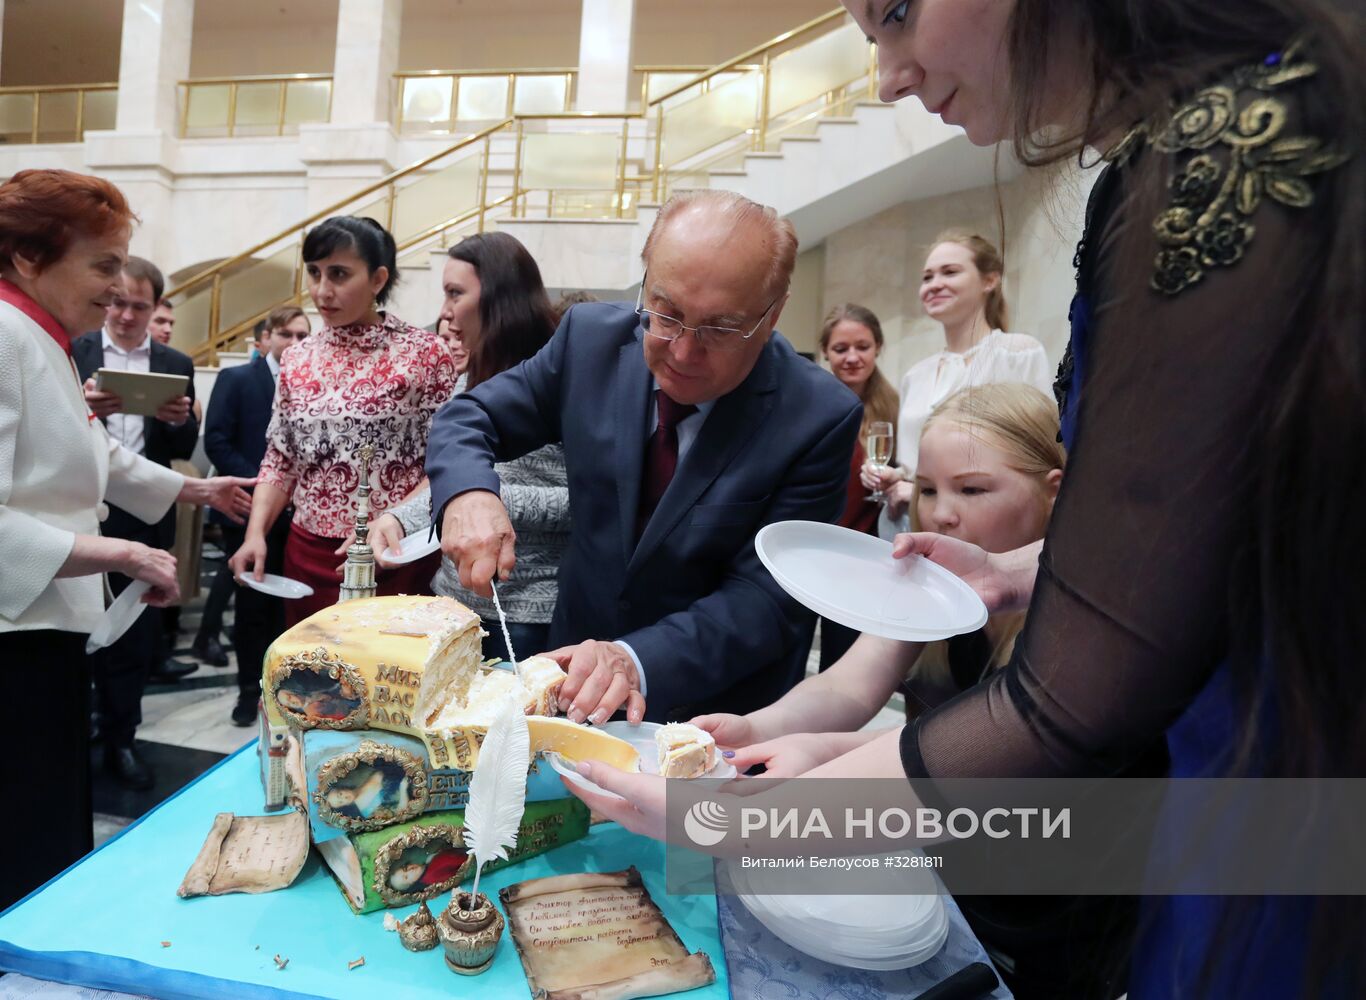 Мероприятия в МГУ, приуроченные ко Дню российского студенчества